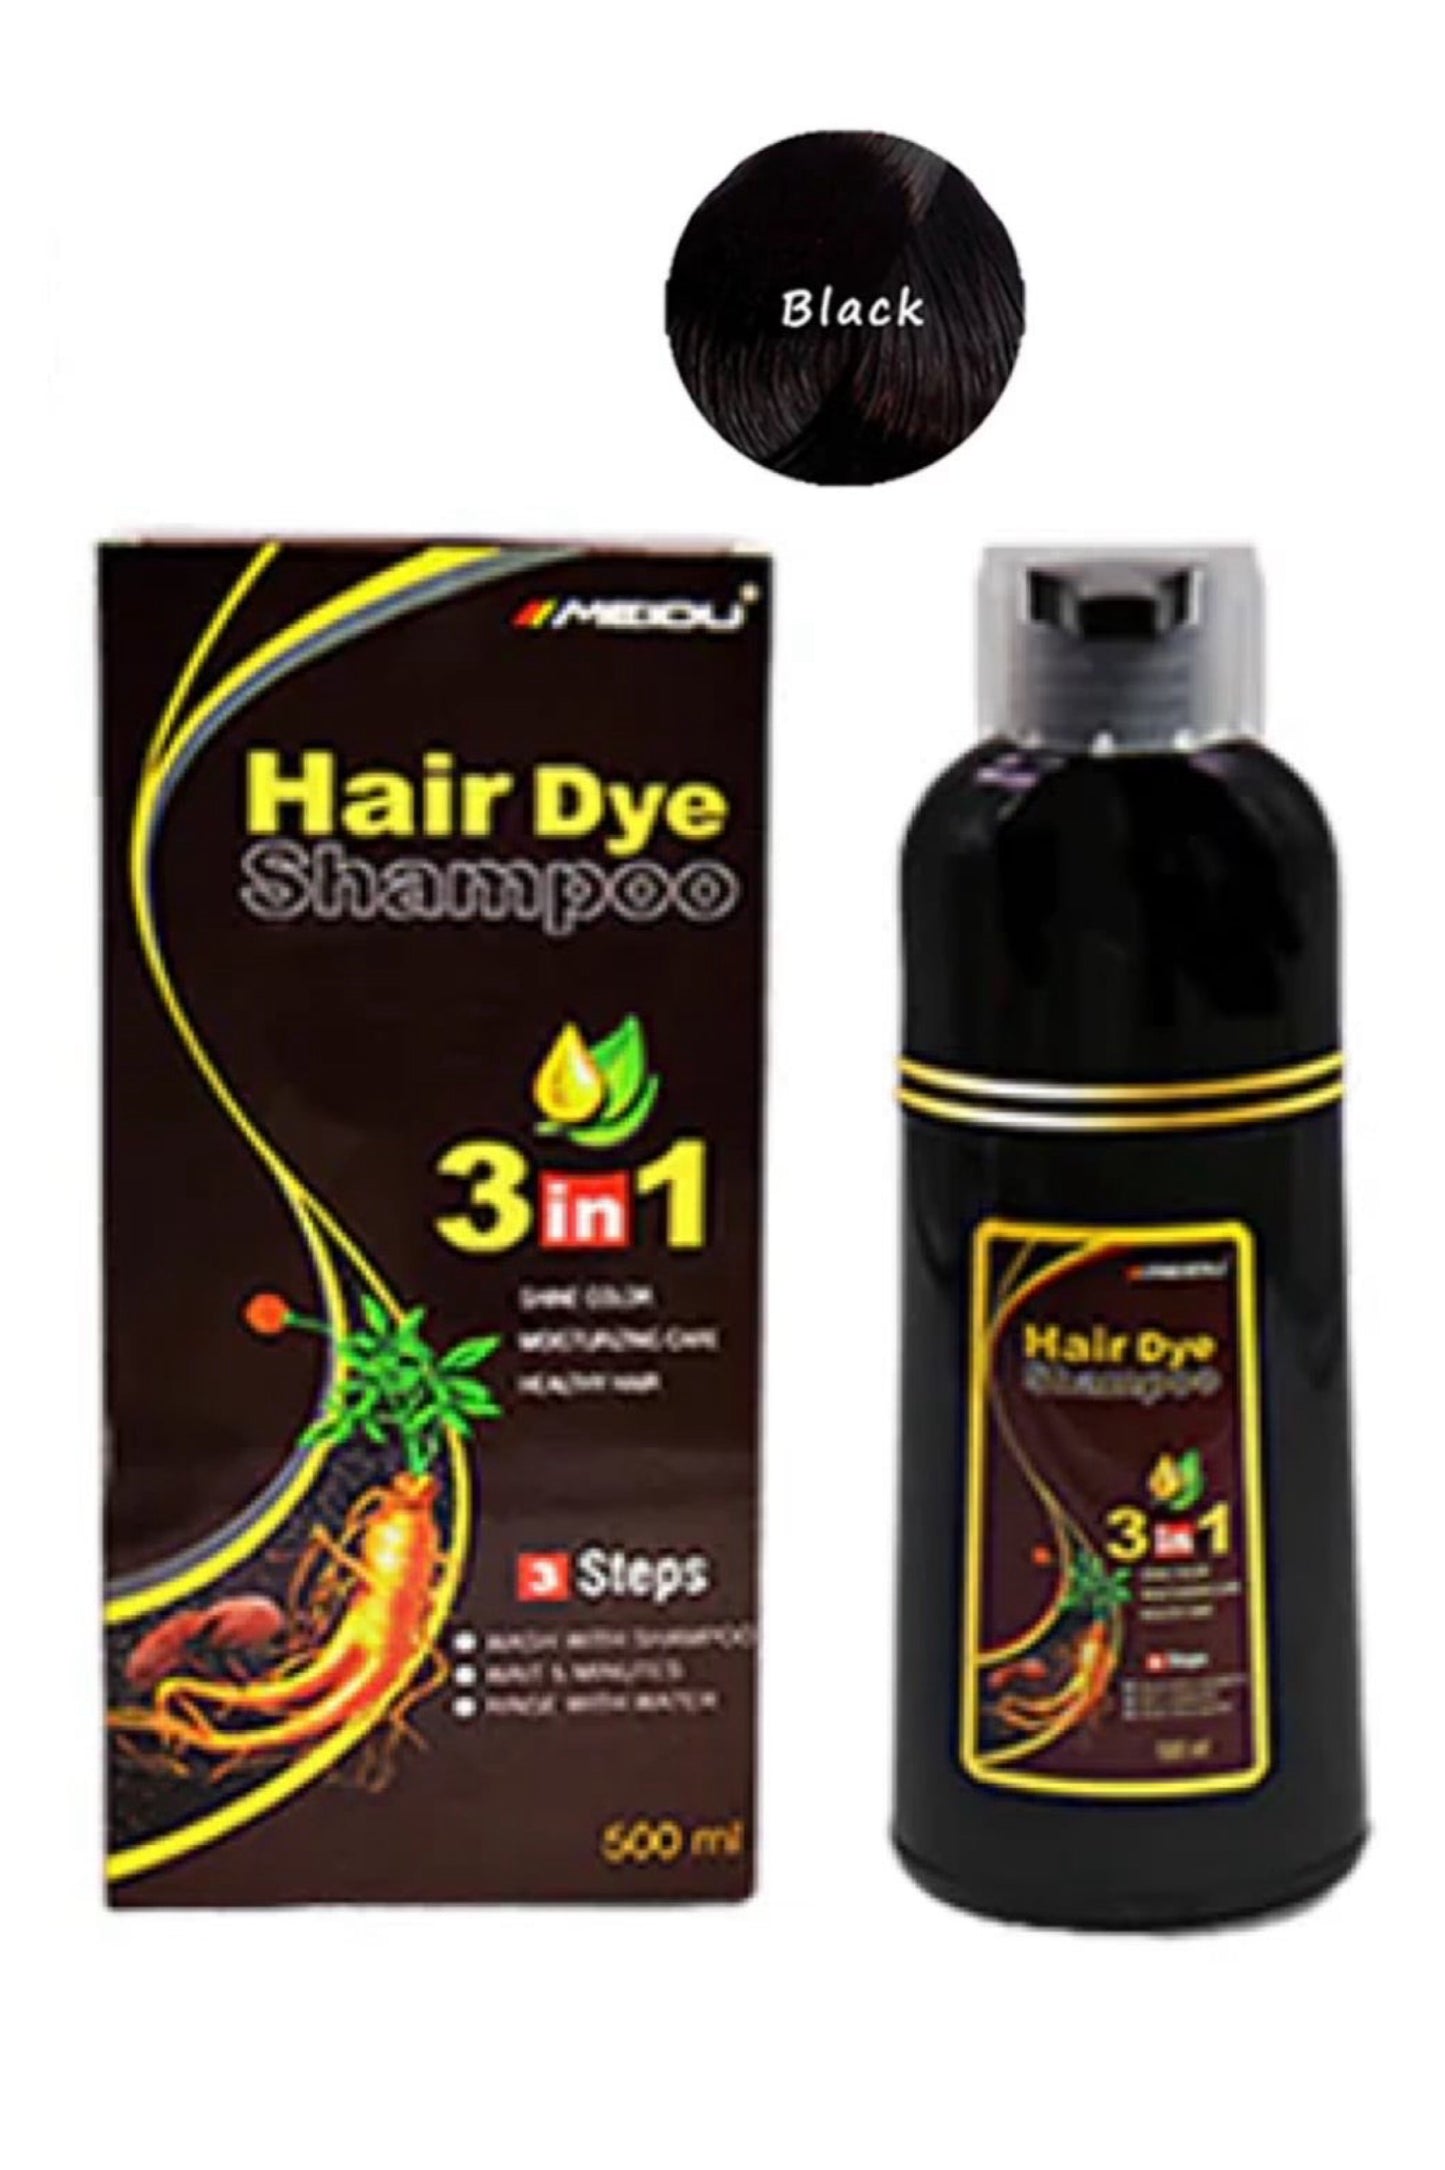 Shampoo Hair Dye Black